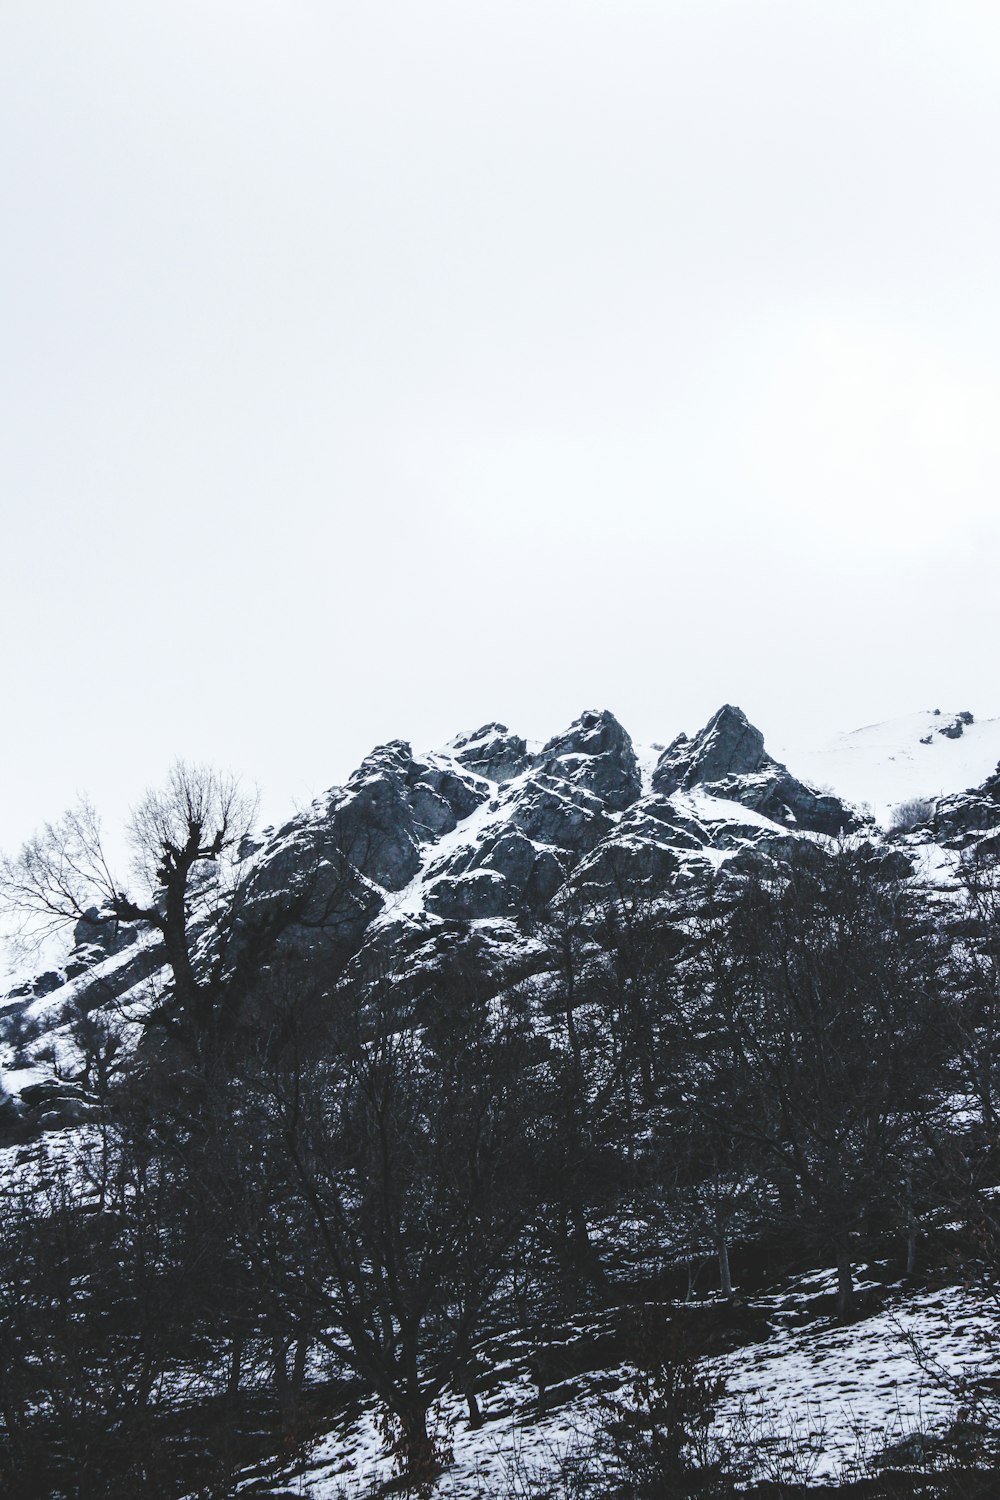 montaña cubierta de nieve con árboles desnudos bajo el cielo blanco